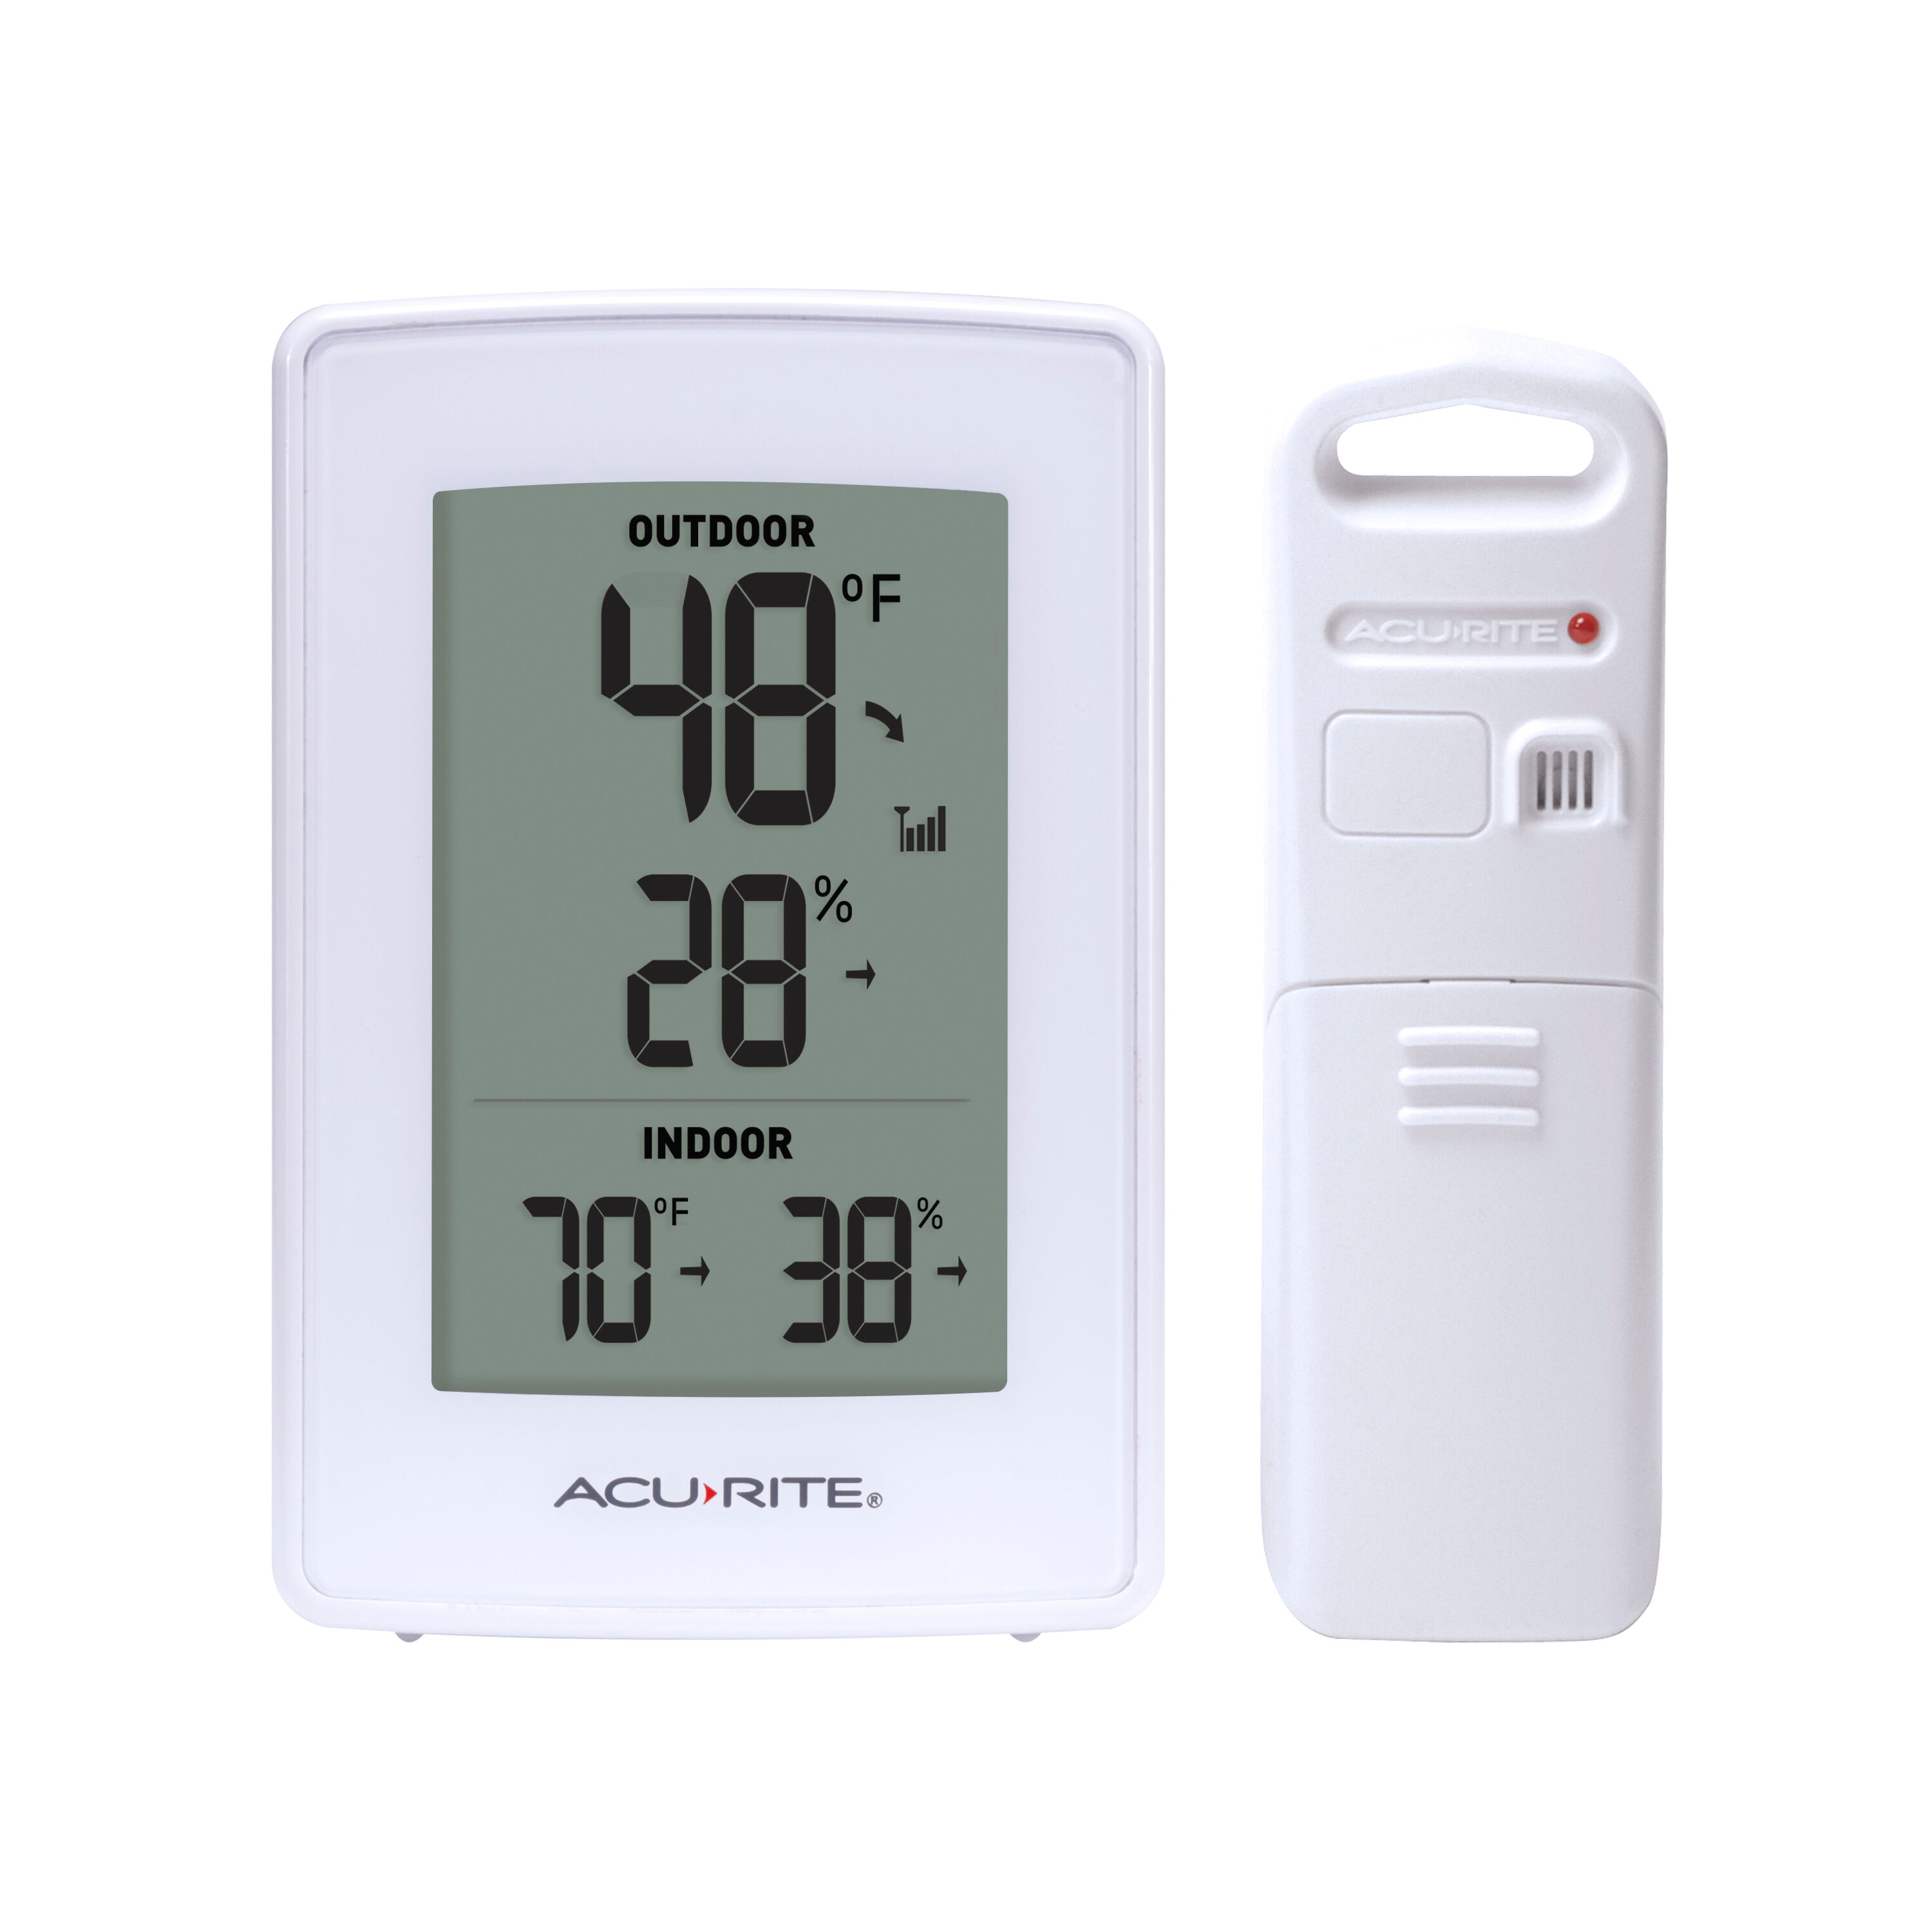 AcuRite model 00606TXA1 replacement outdoor temperature sensor